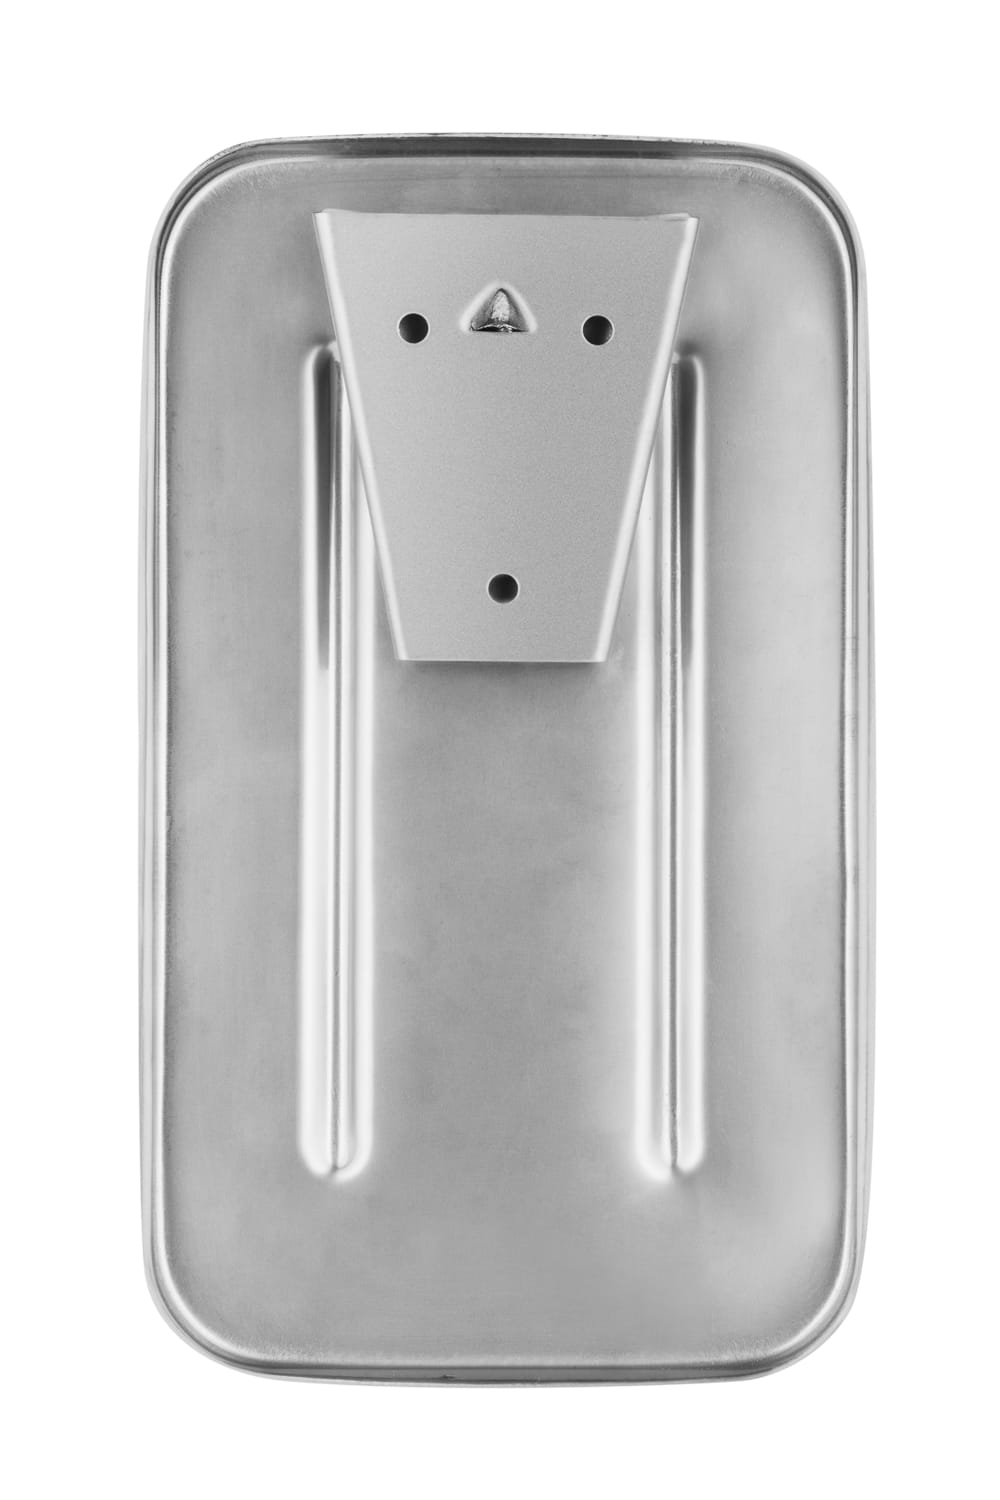 Soap dispenser stainless steel vertical, Impeco - 1000ml